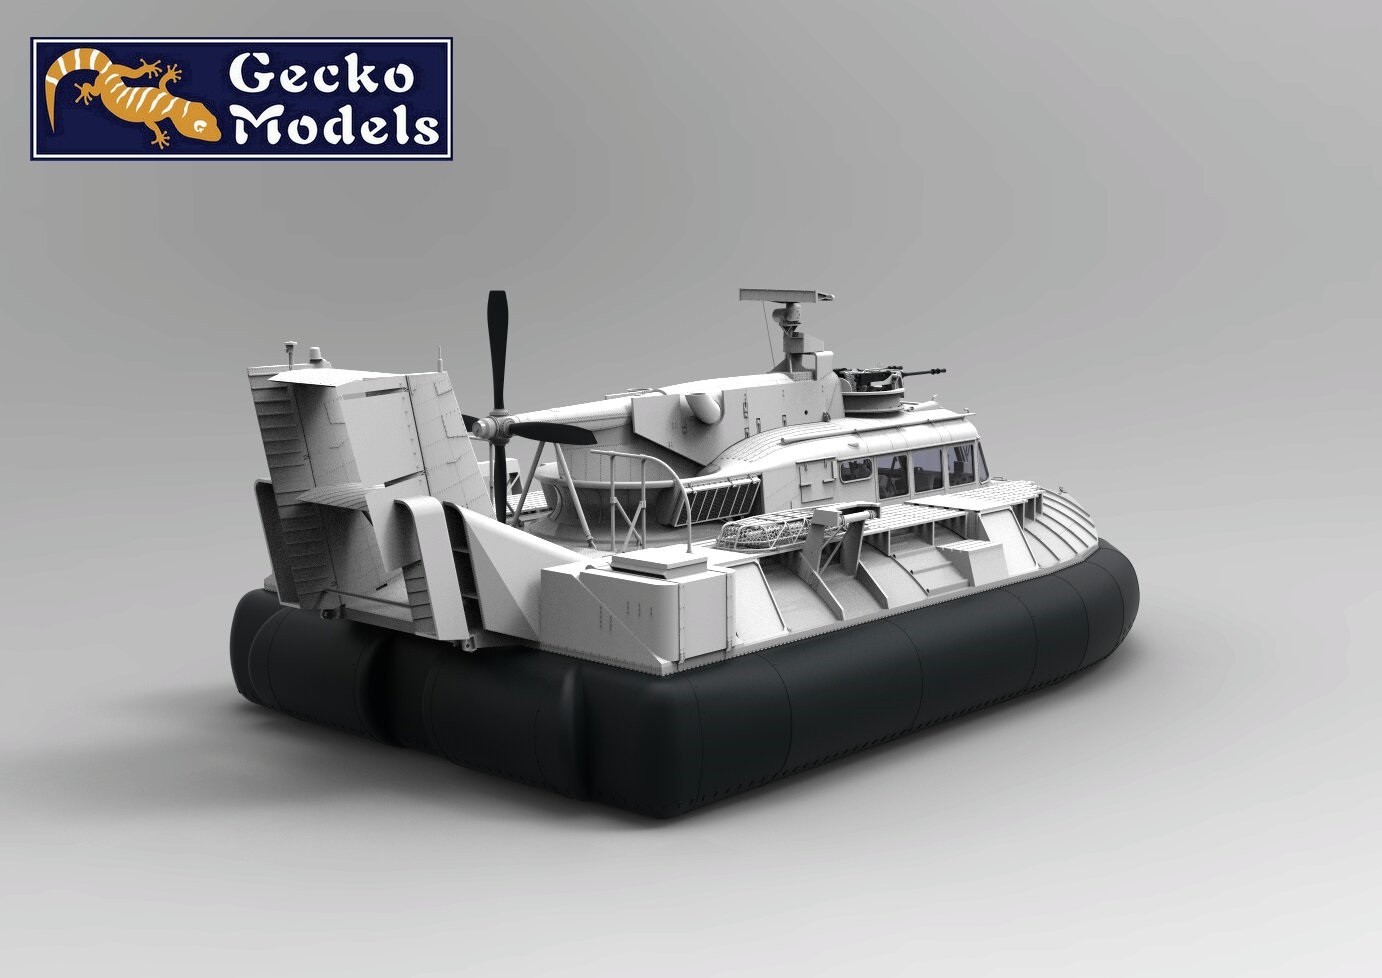 Gecko Models Announces Unique 1/35 Scale SK-5 PACV Model CAD-3